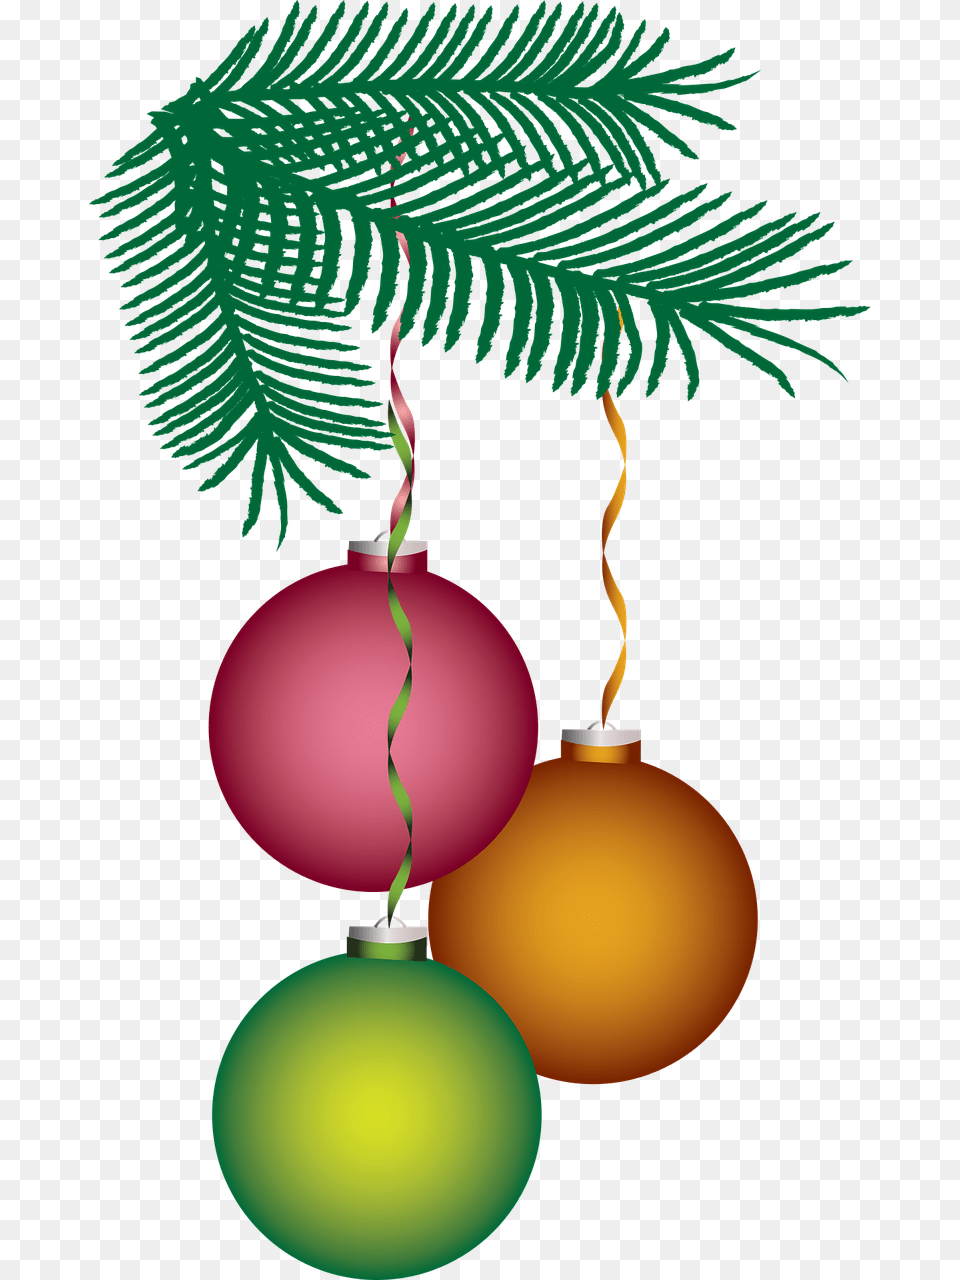 Coisas De Natal, Accessories, Sphere, Ornament, Lighting Png Image